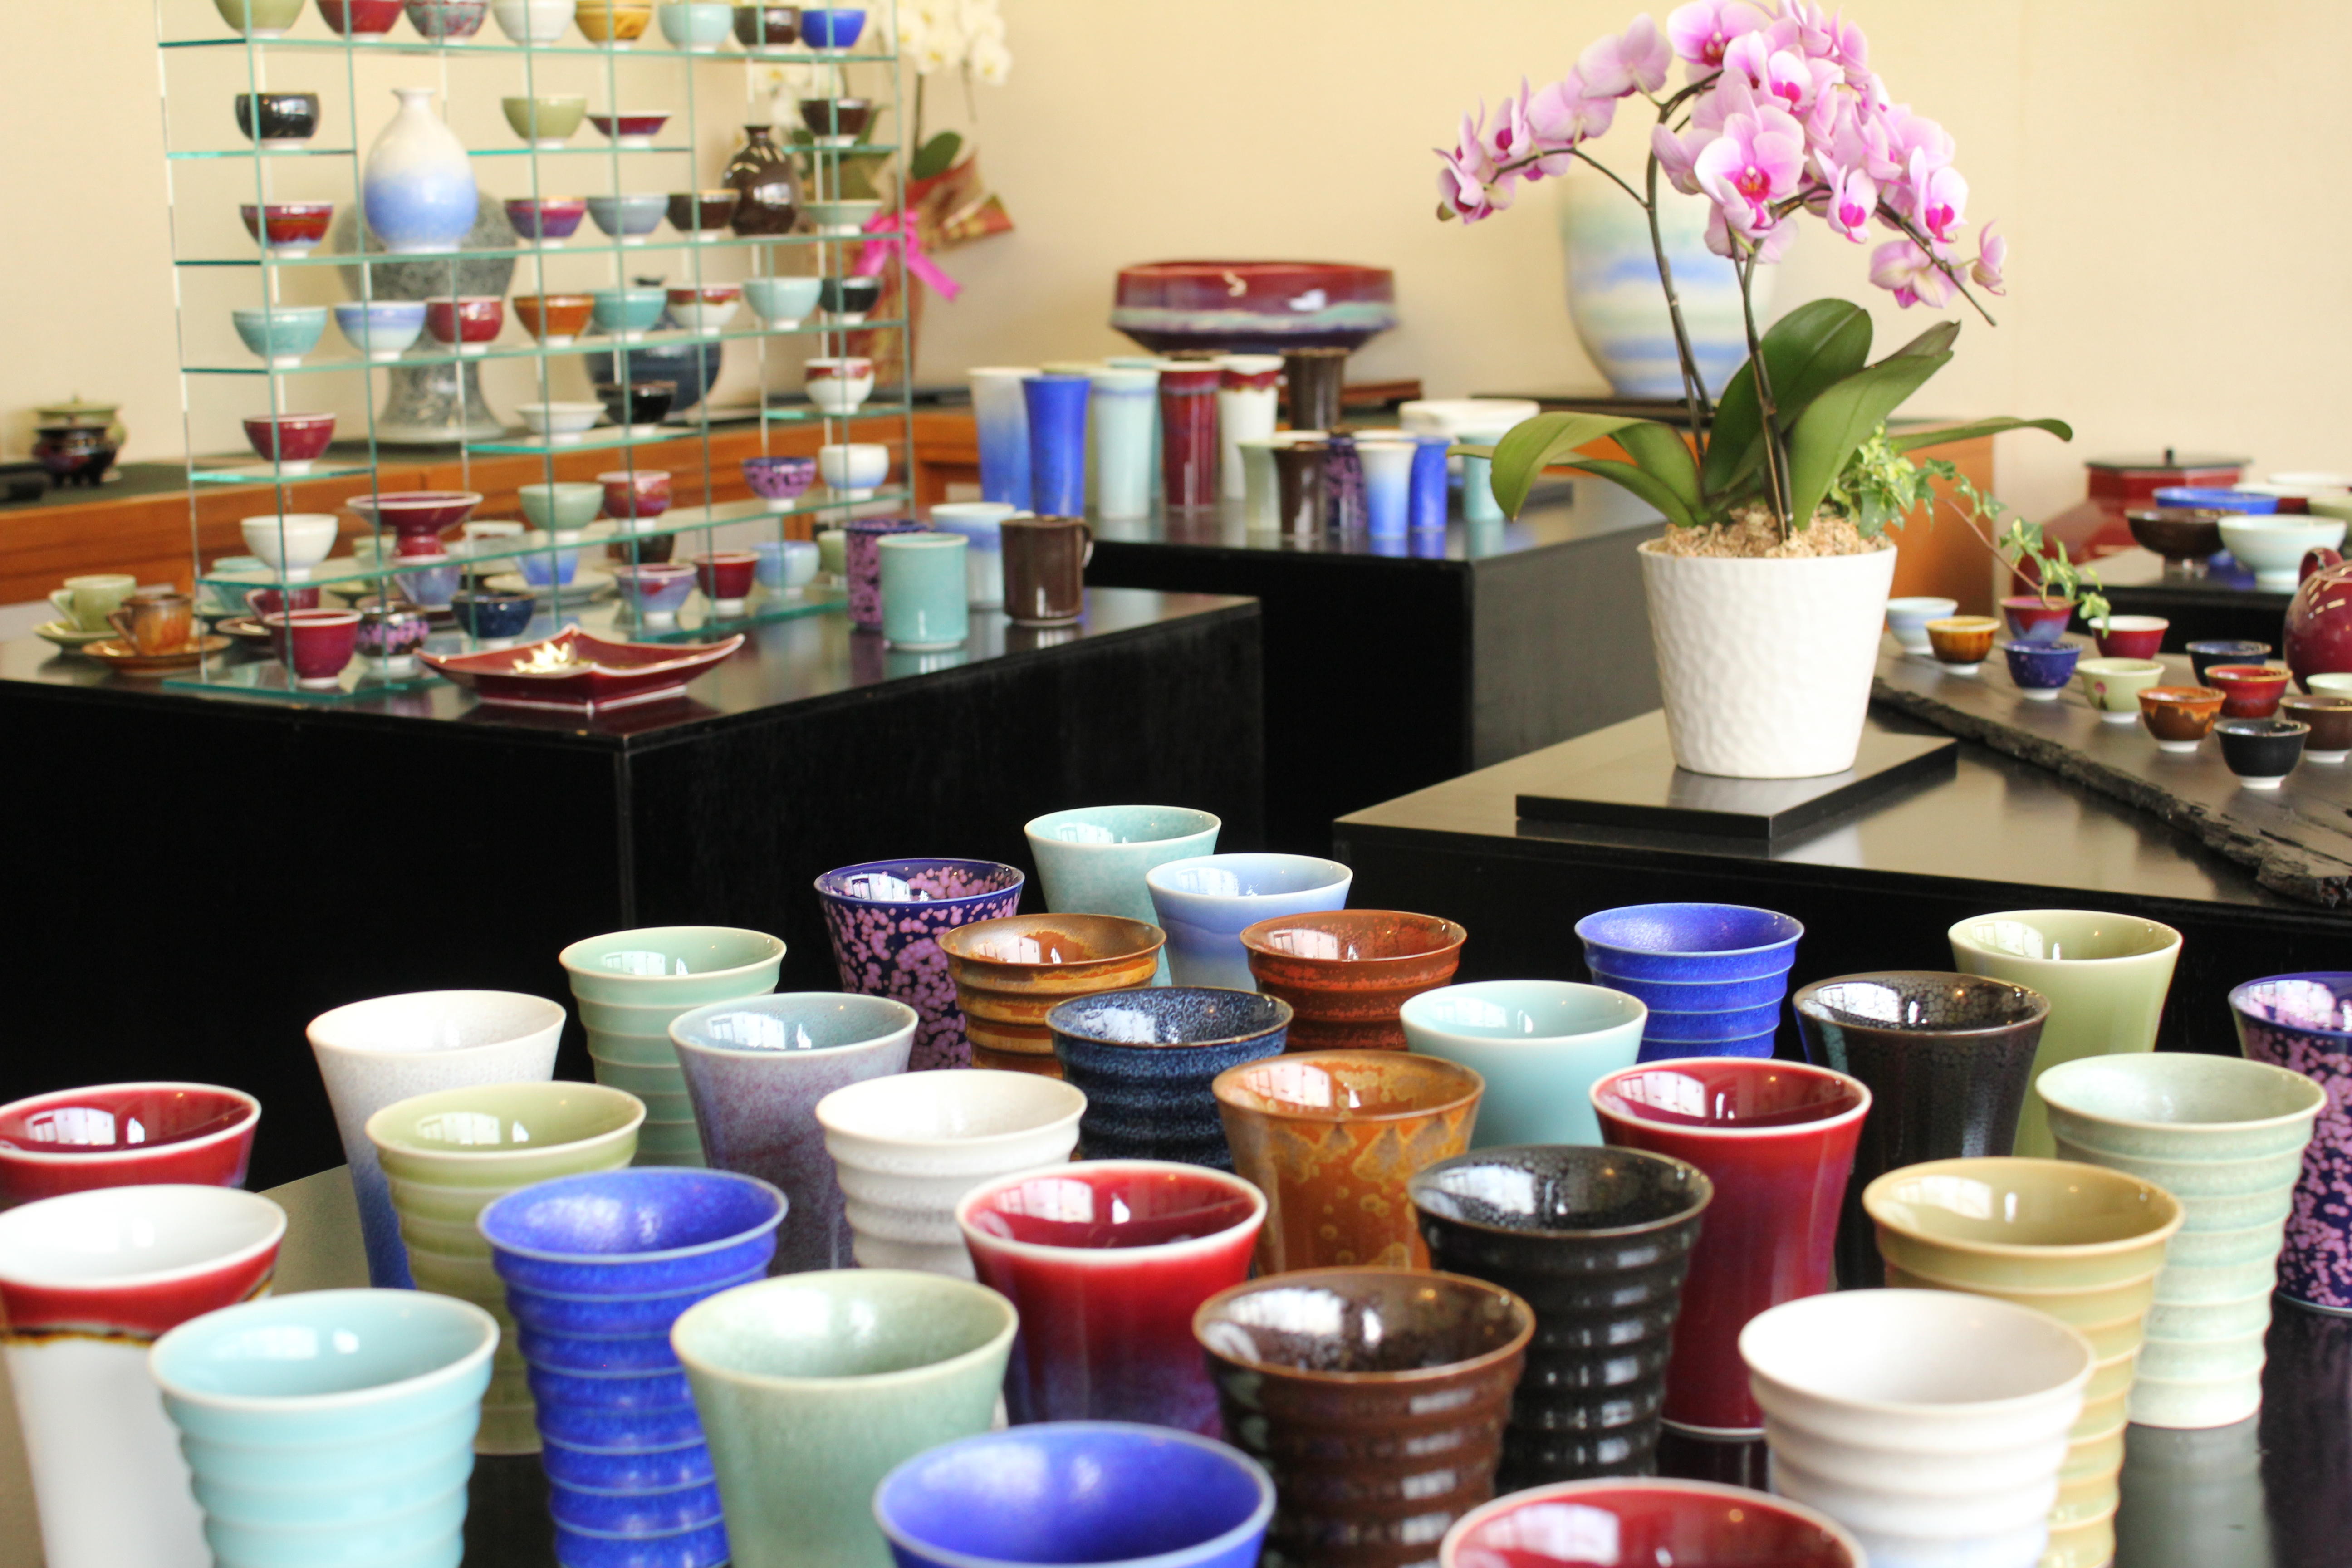 ギャラリー内は色とりどりの器やカップなど多数取り揃えてあります。